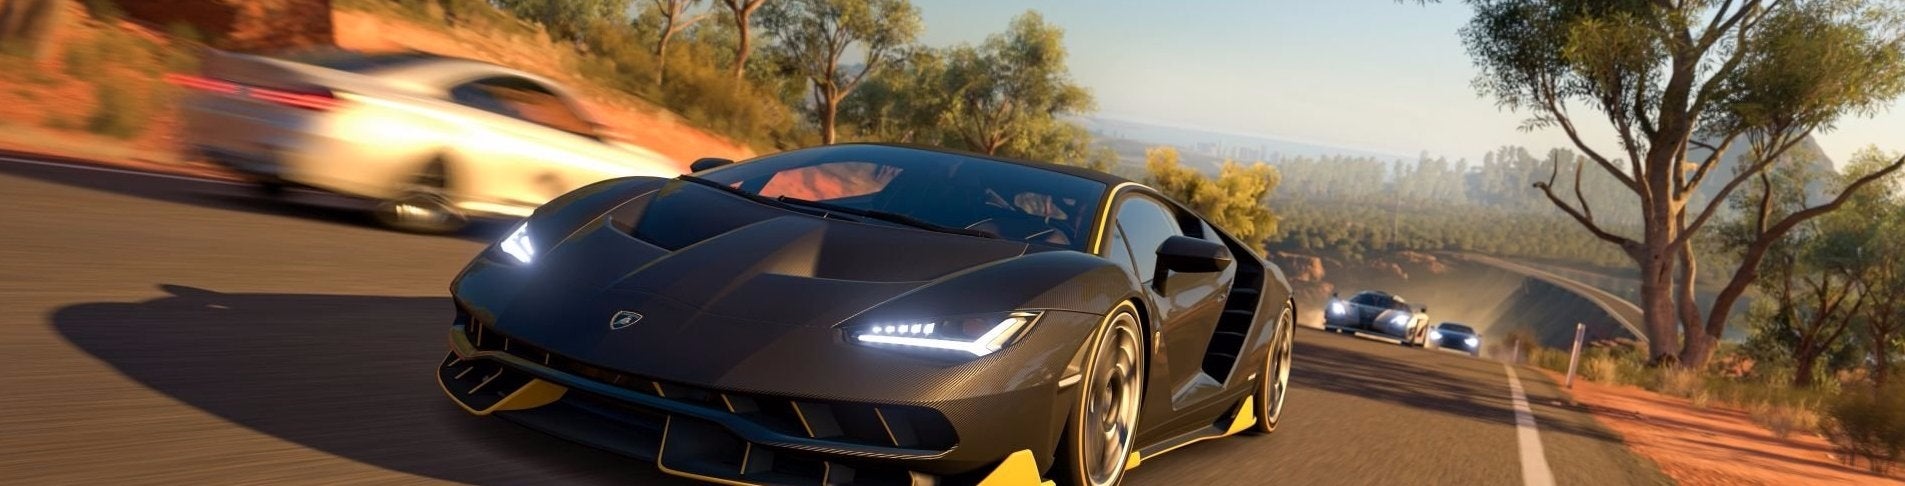 Image for Forza Horizon 3 nejlepšími závody této generace, tvrdí recenze